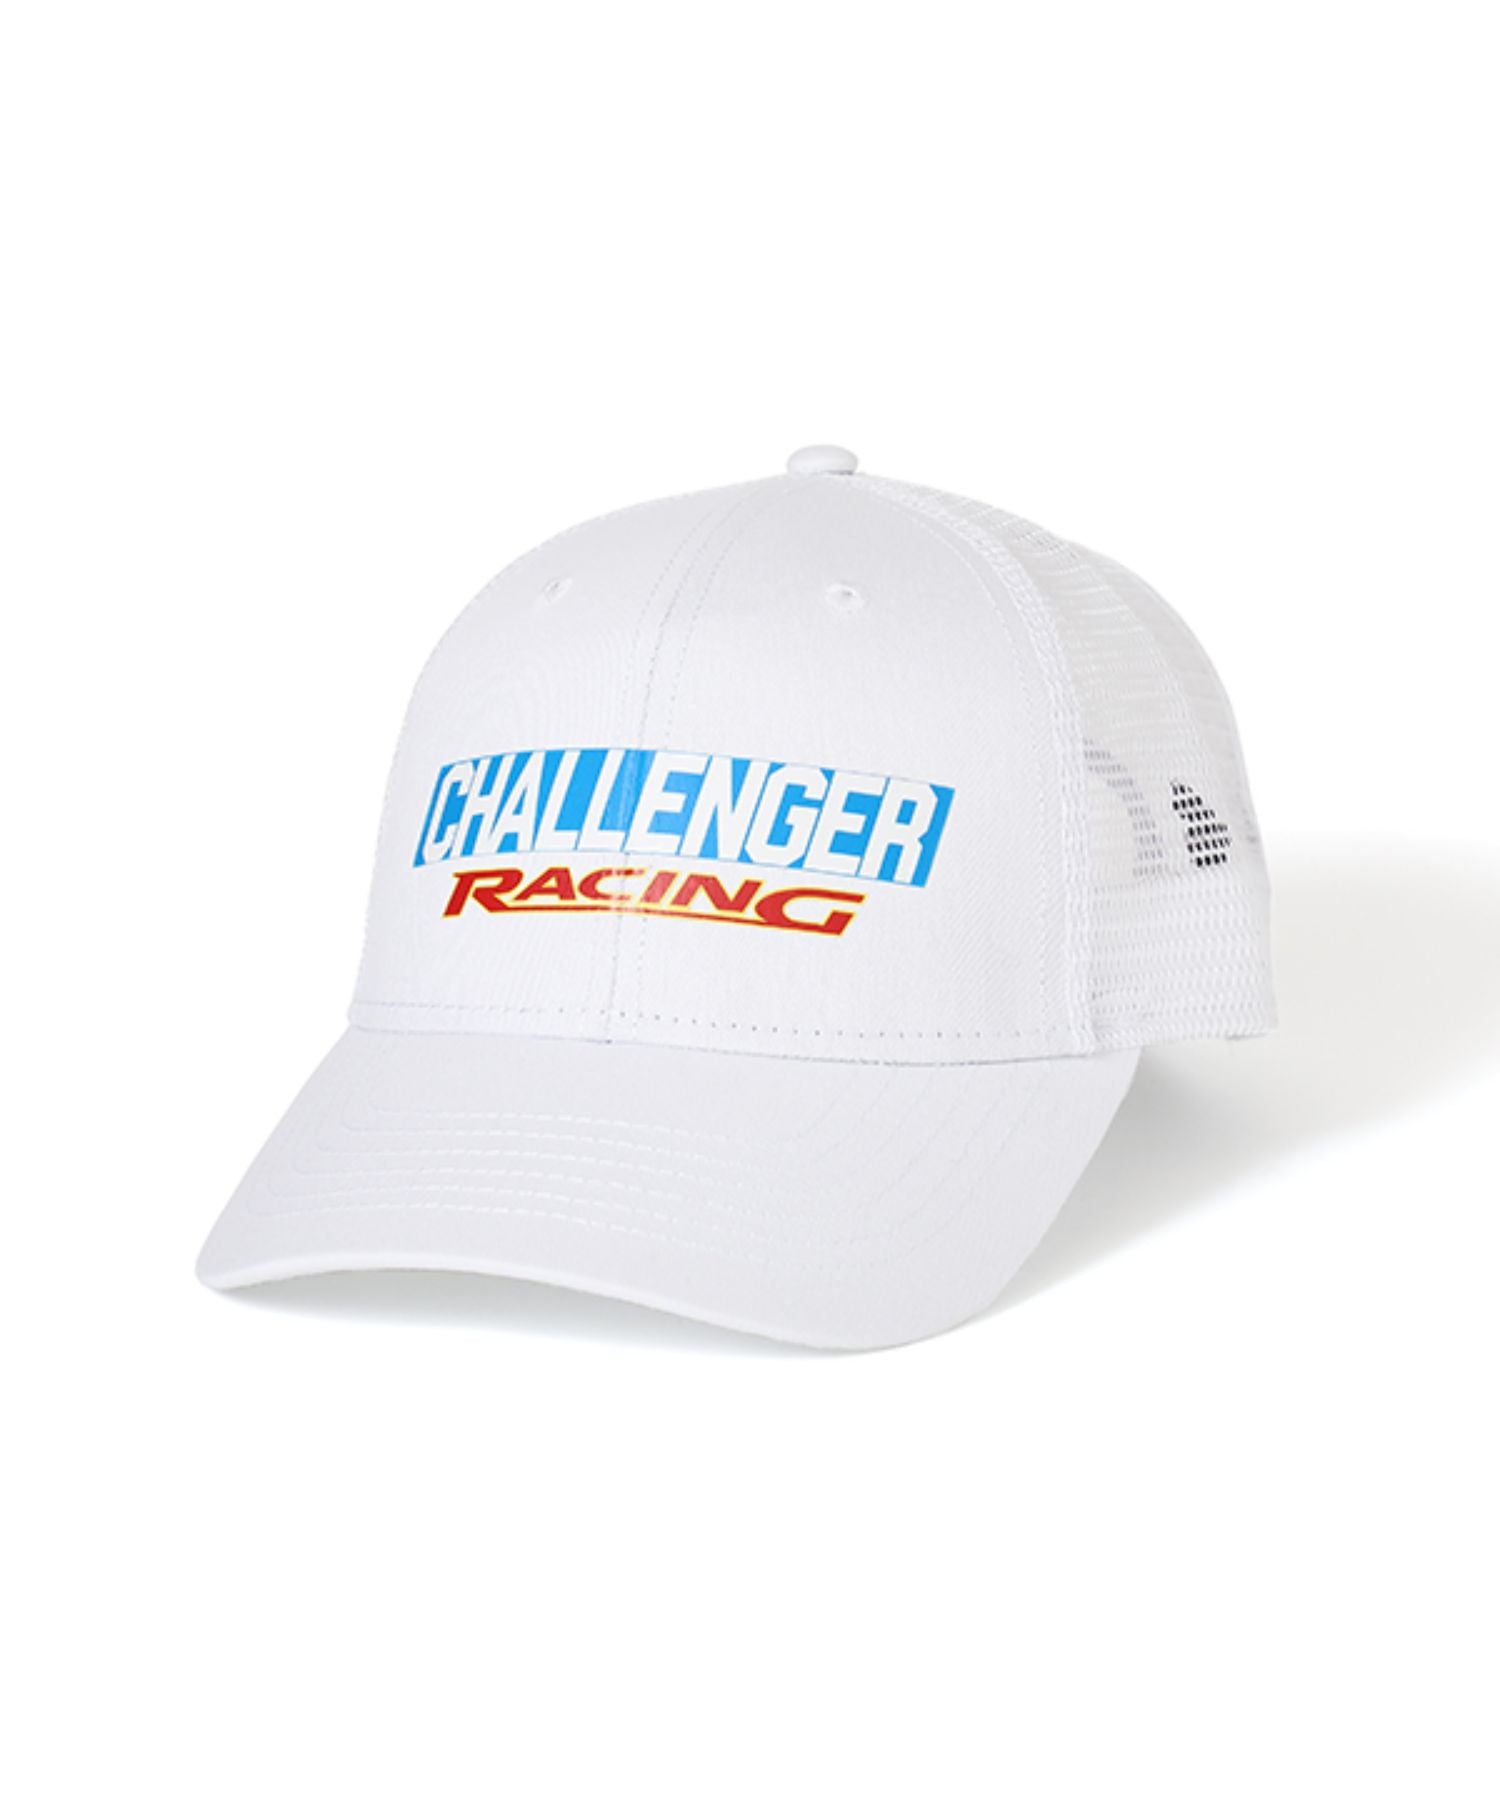 CMC Racing Logo Cap - CHALLENGER (チャレンジャー) - cap (キャップ 